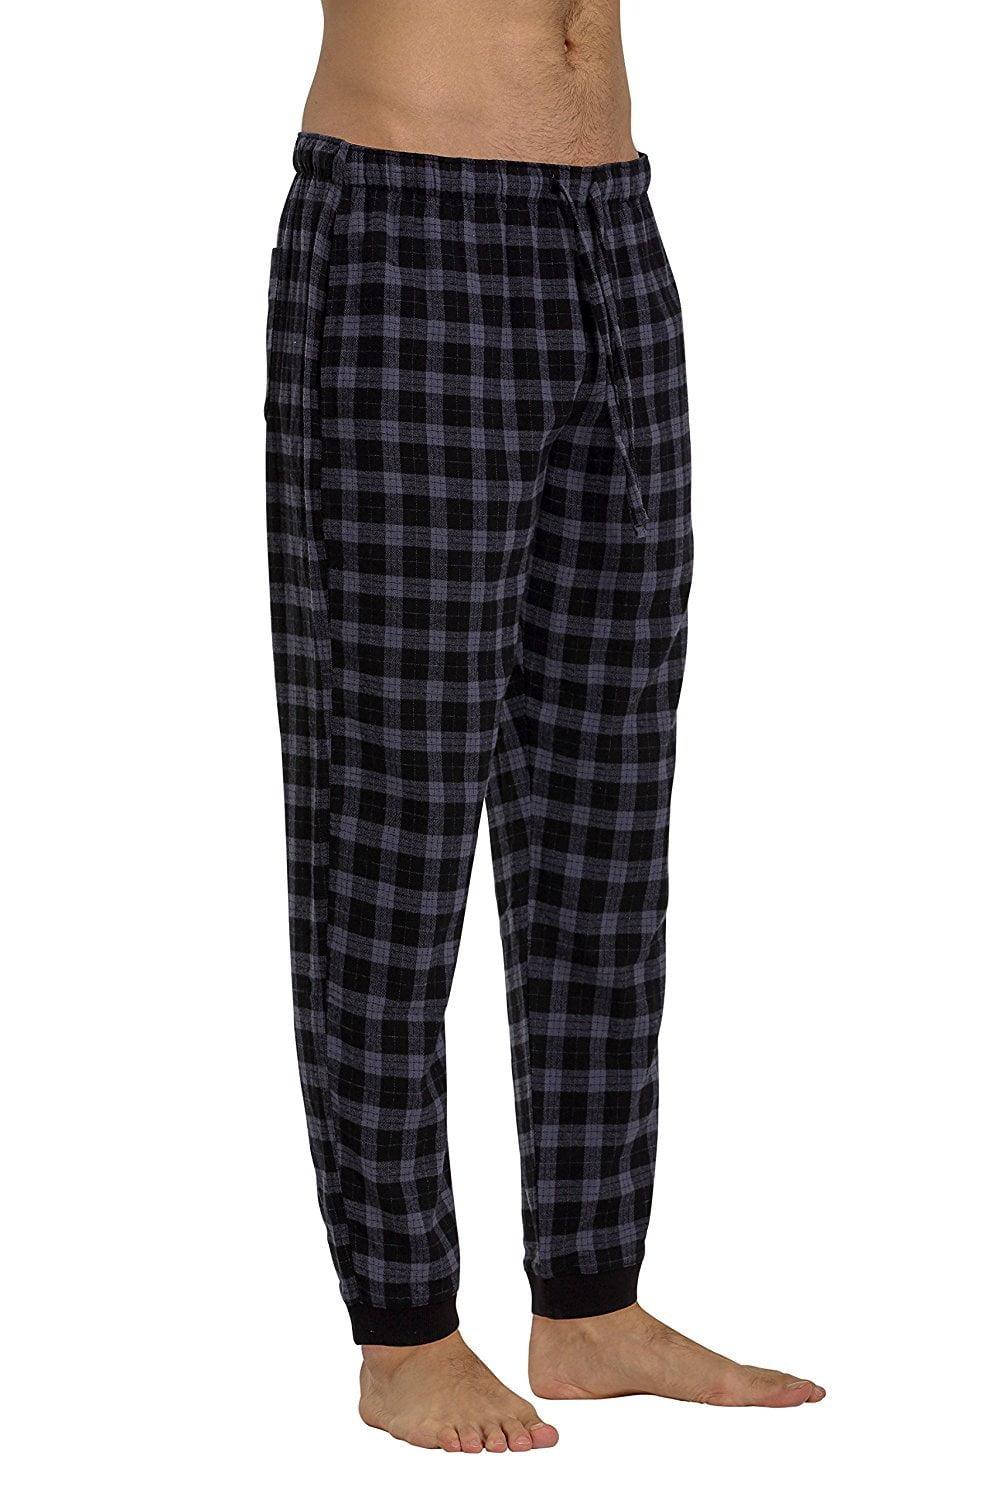 CYZ Men's 100% Cotton Flannel Pajama Lounge Jogger Pant - Walmart.com